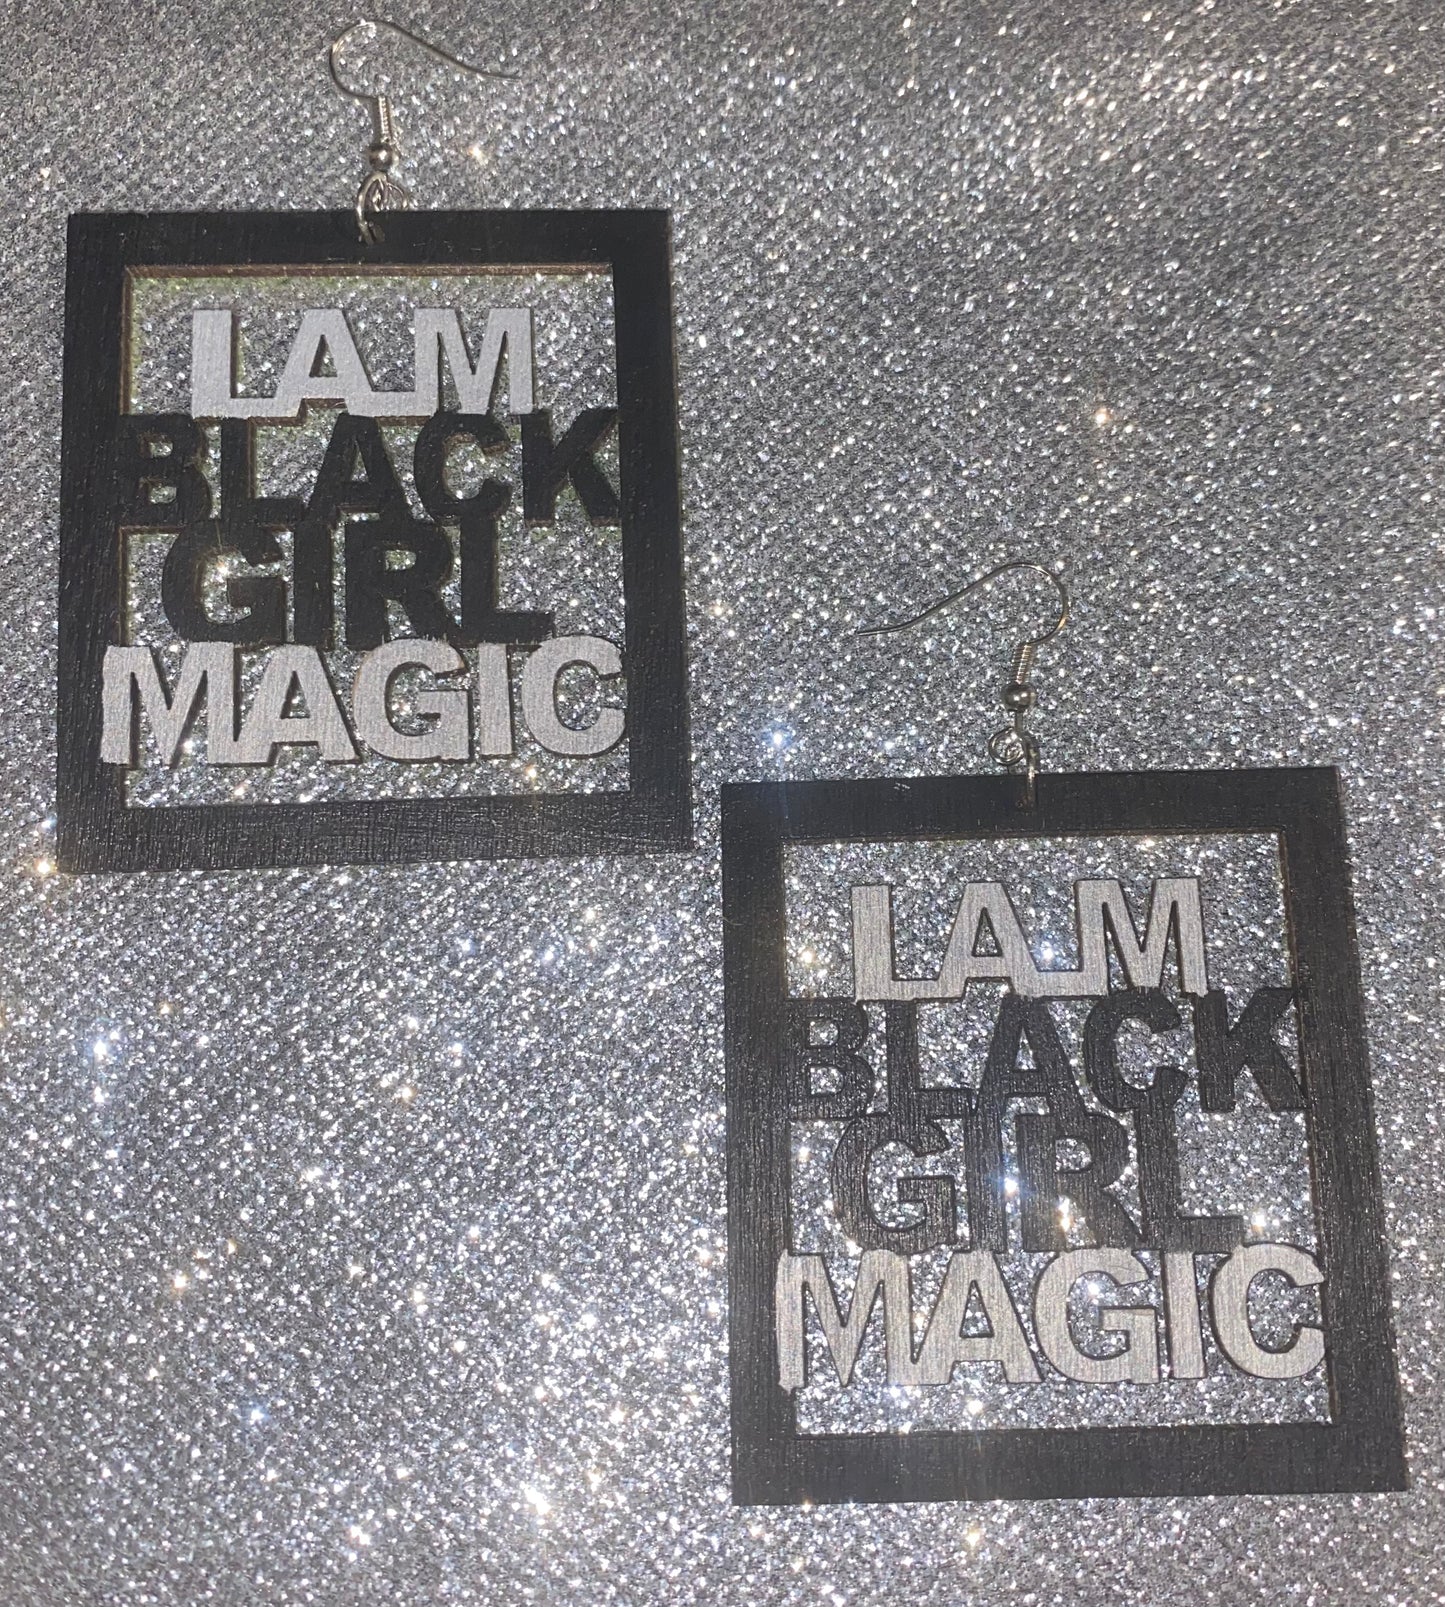 I Am Black Girl Magic Earrings